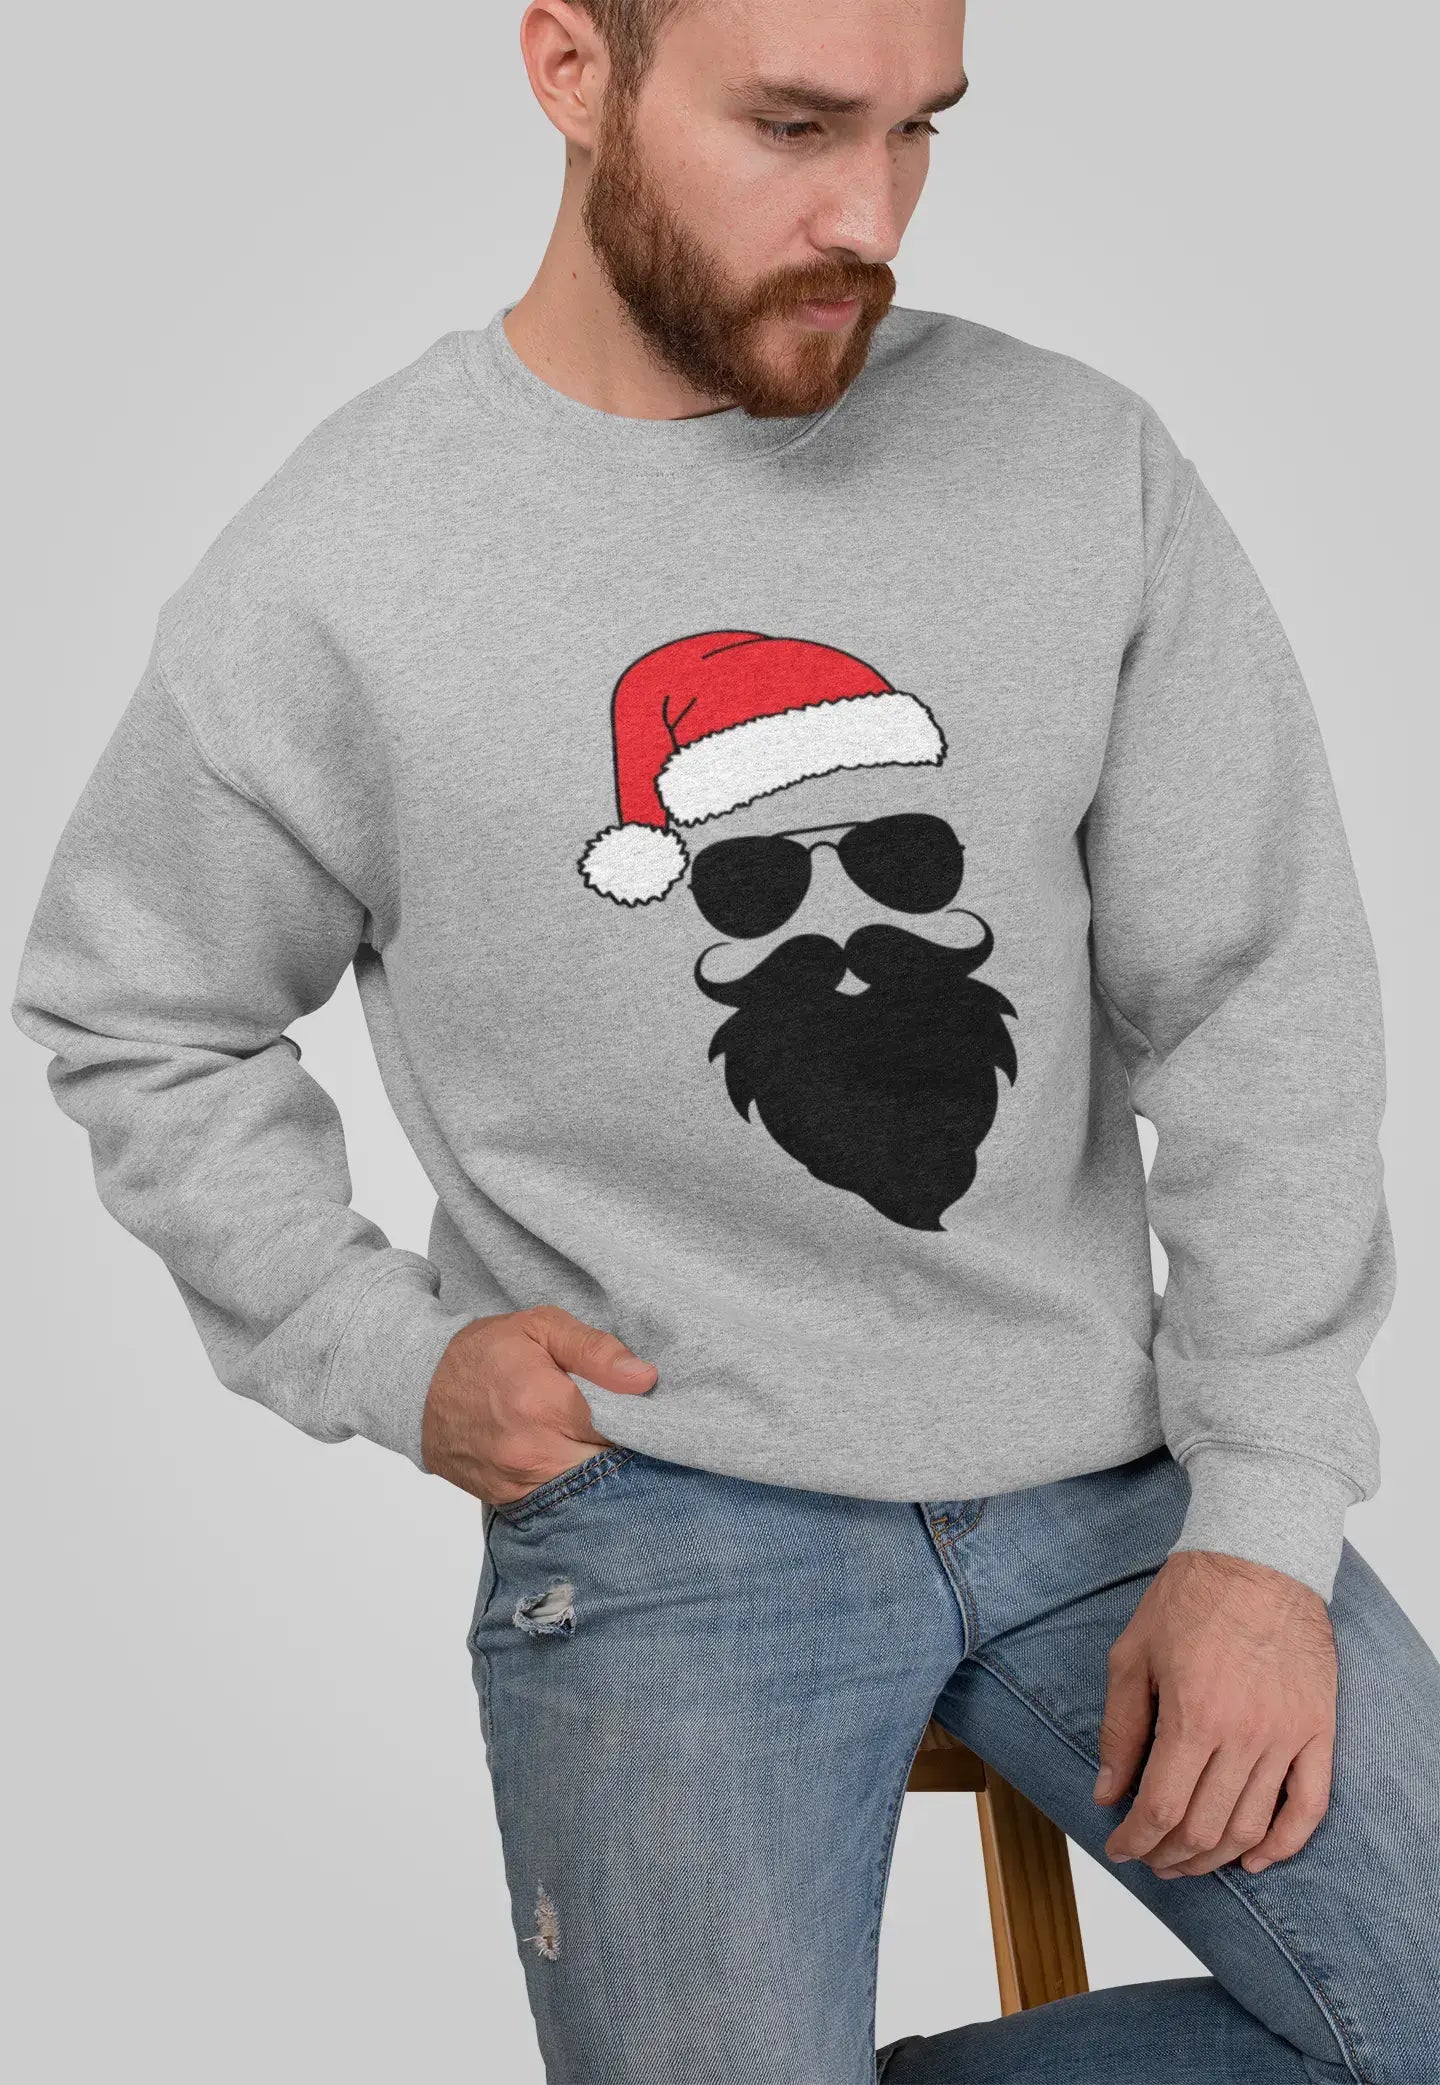 ULTRABASIC - Lustiges Weihnachts-Sweatshirt mit lustigem Weihnachtsmann-Motiv, <span>bedrucktes</span> <span>Grafik</span> -T-Shirt <span>für Herren,</span> <span>Geschenk-</span> T-Shirt <span>in Graumeliert</span>